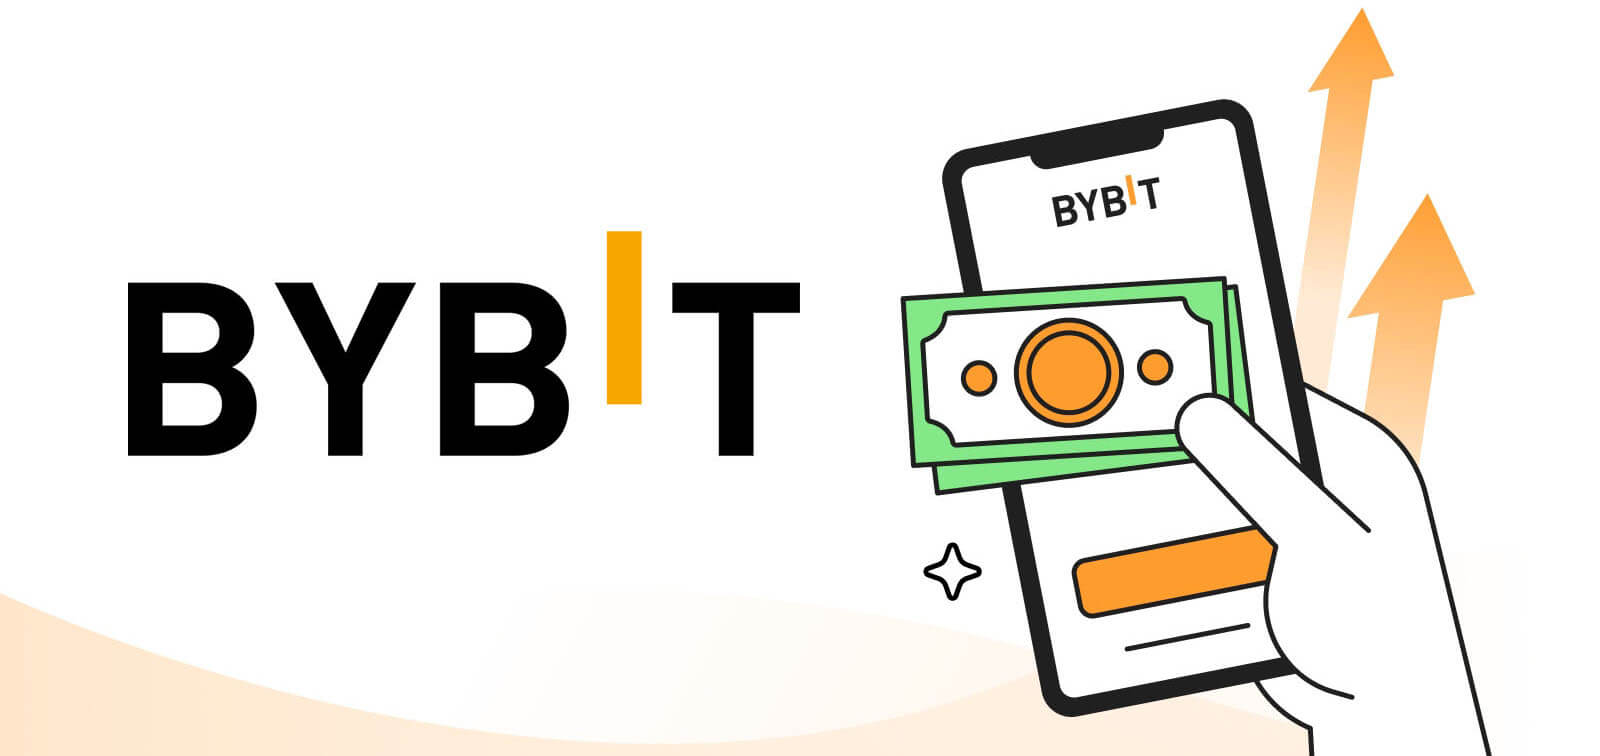 Bybit 앱 다운로드: Android 및 iOS 모바일에 설치하는 방법